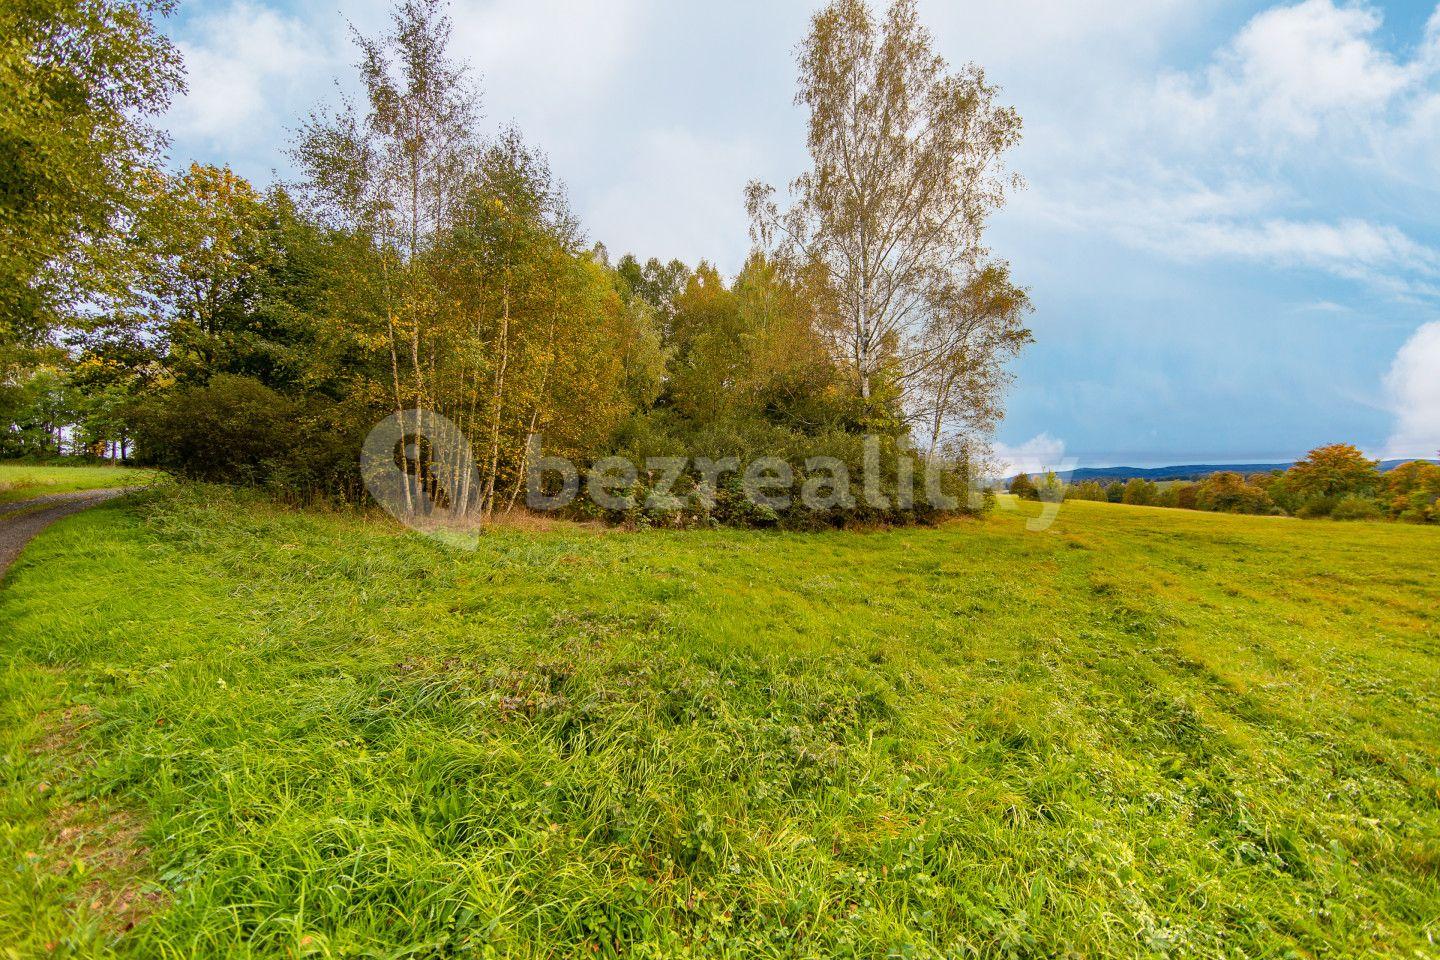 Prodej pozemku 1.966 m², Luby, Karlovarský kraj